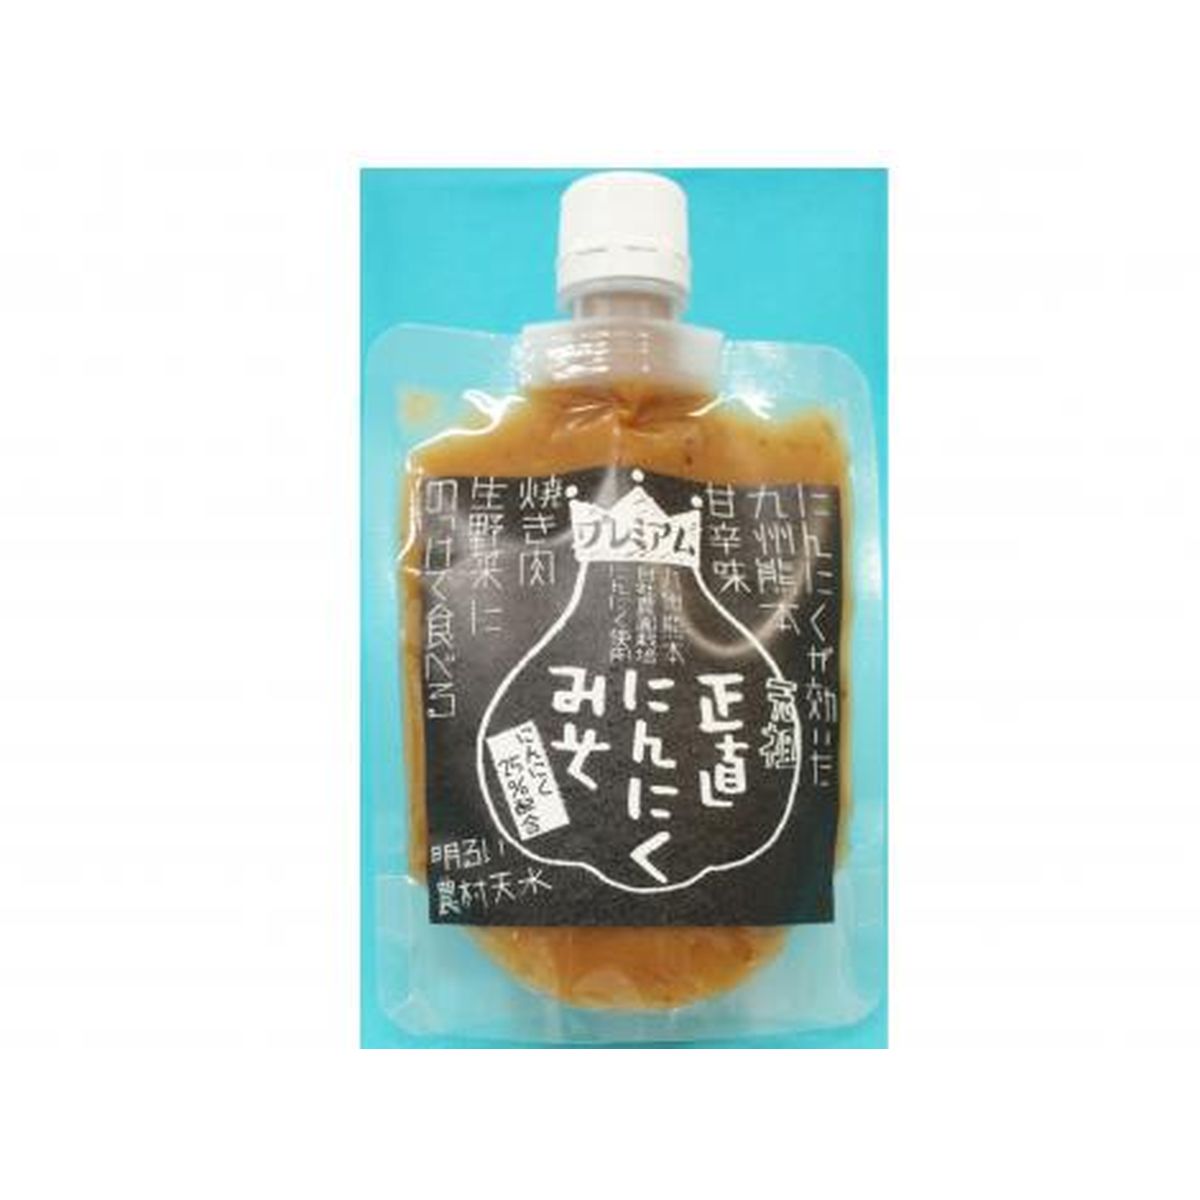 【送料無料】明るい農村天水 熊本県産にんにく使用 にんにく味噌2種5個セット